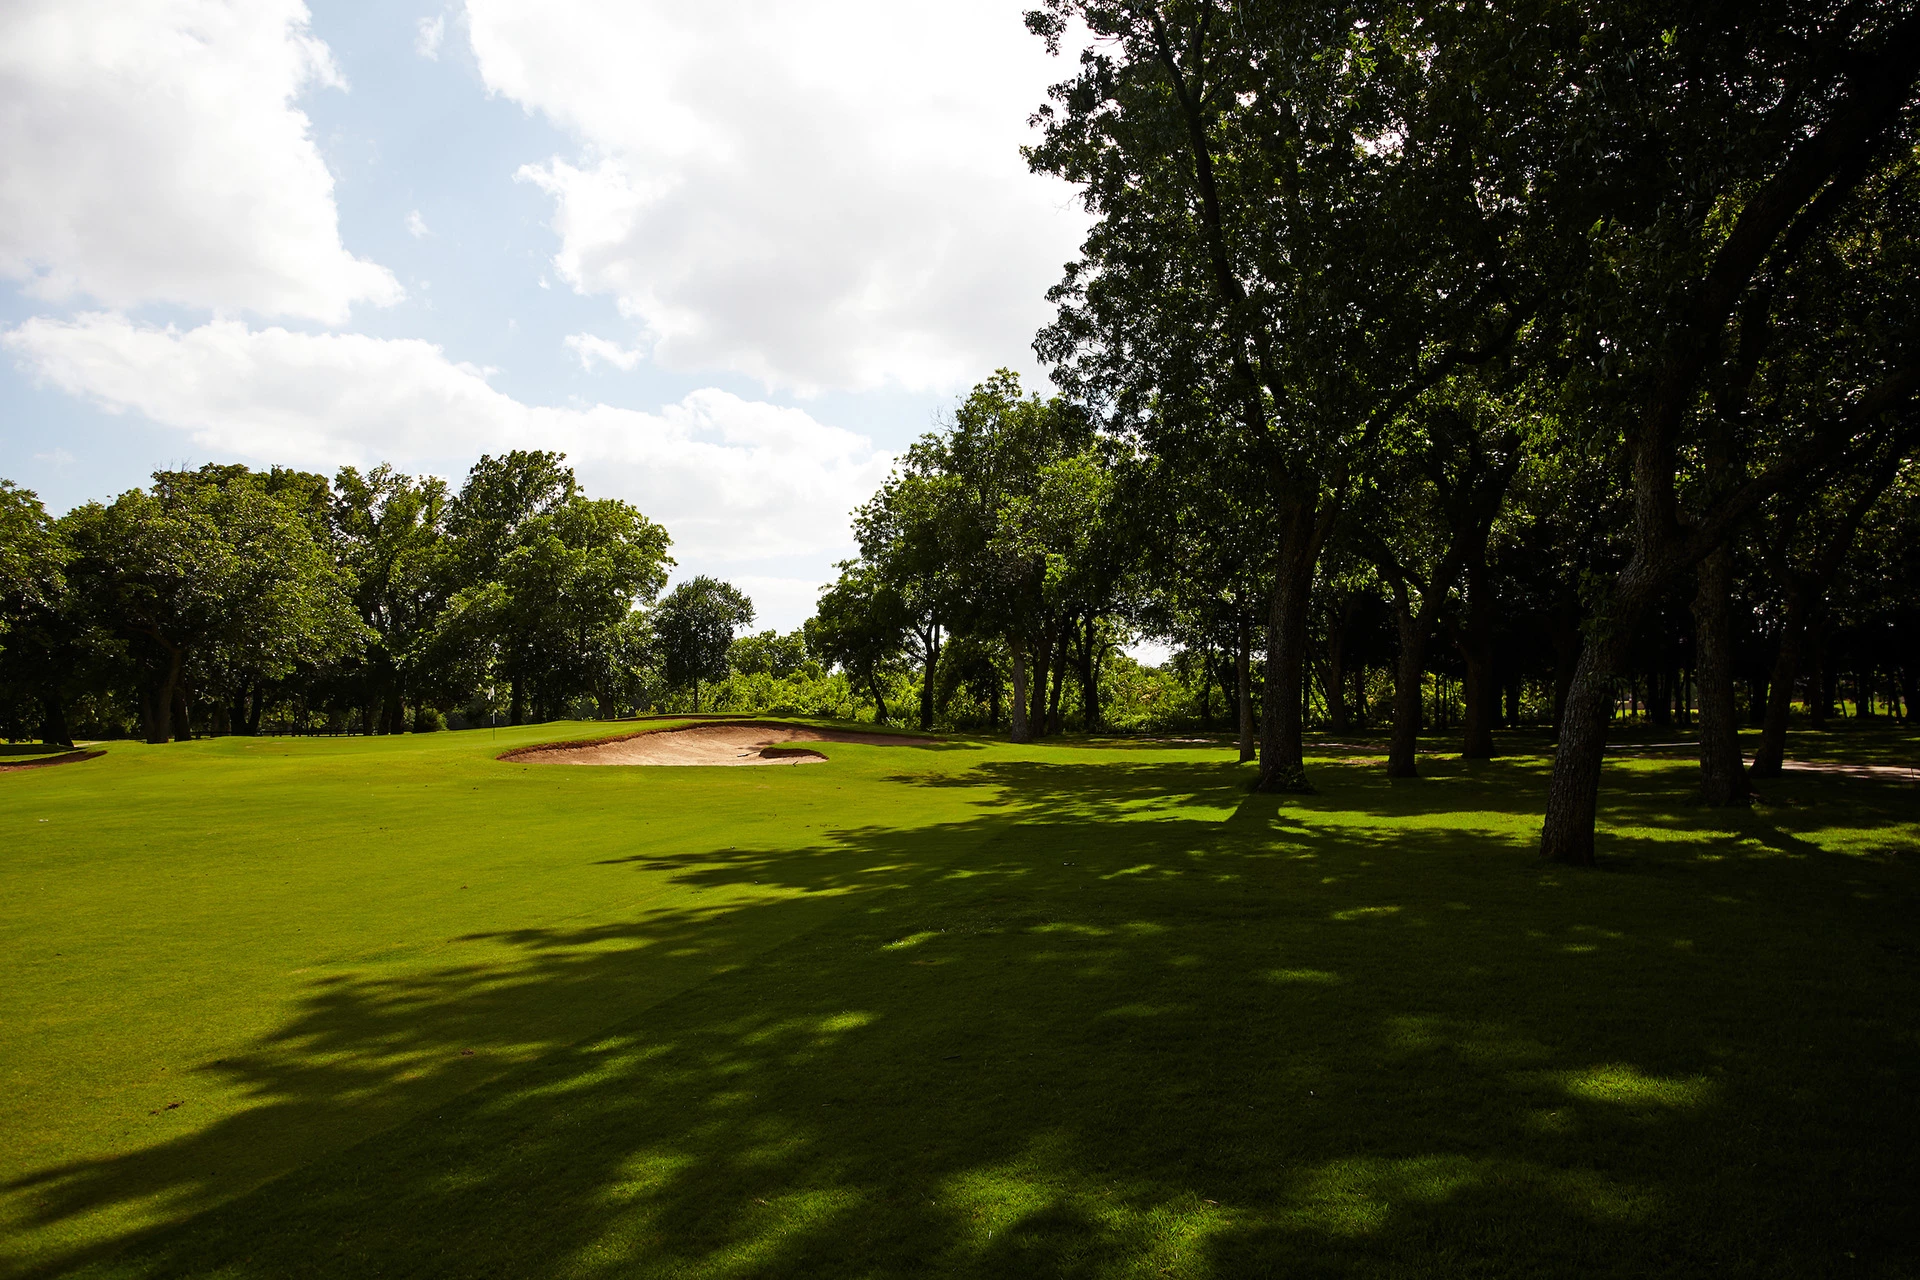 Walnut Creek Country Club - Golf Course Oak Hole #7